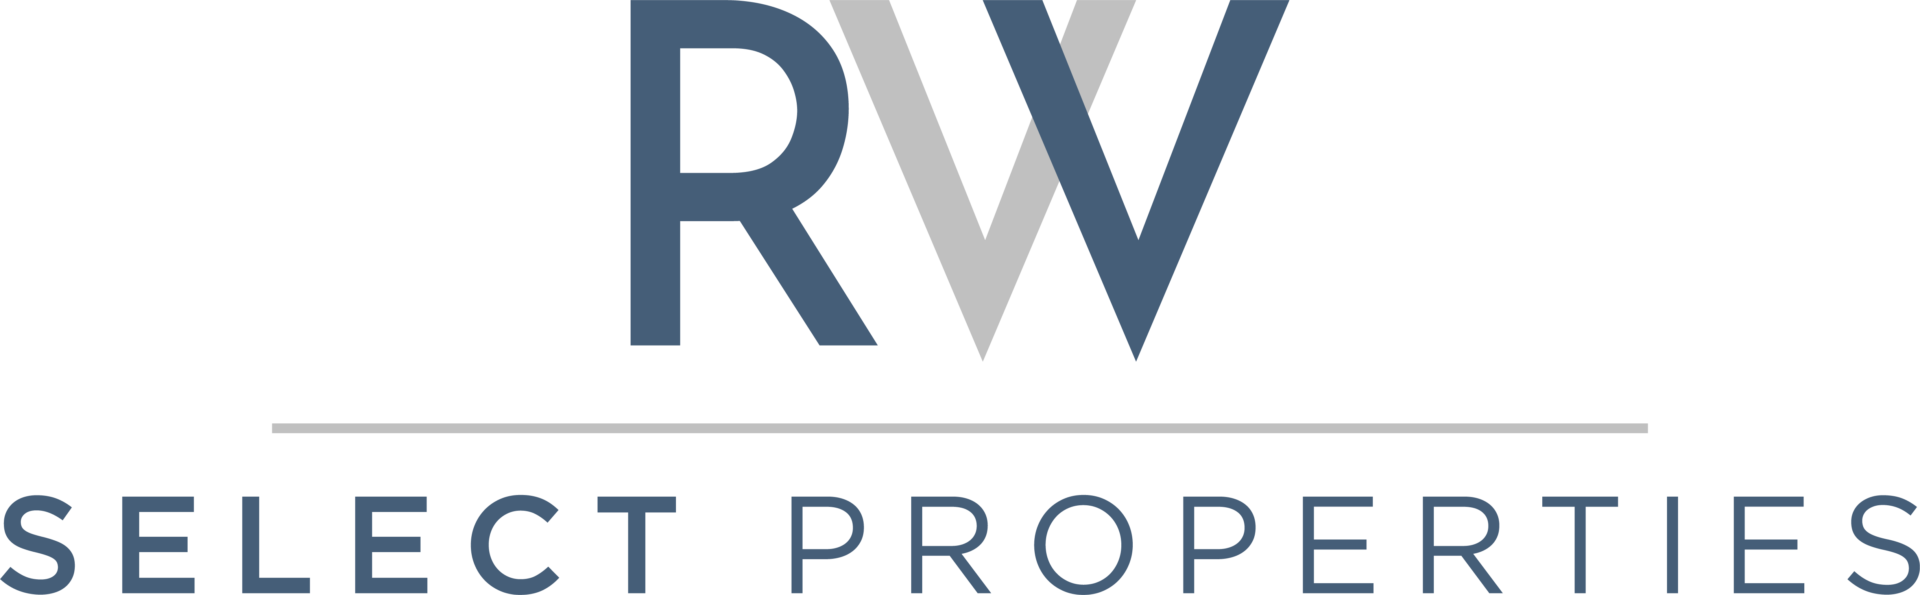 CX-82954_RVW Select Properties_Final